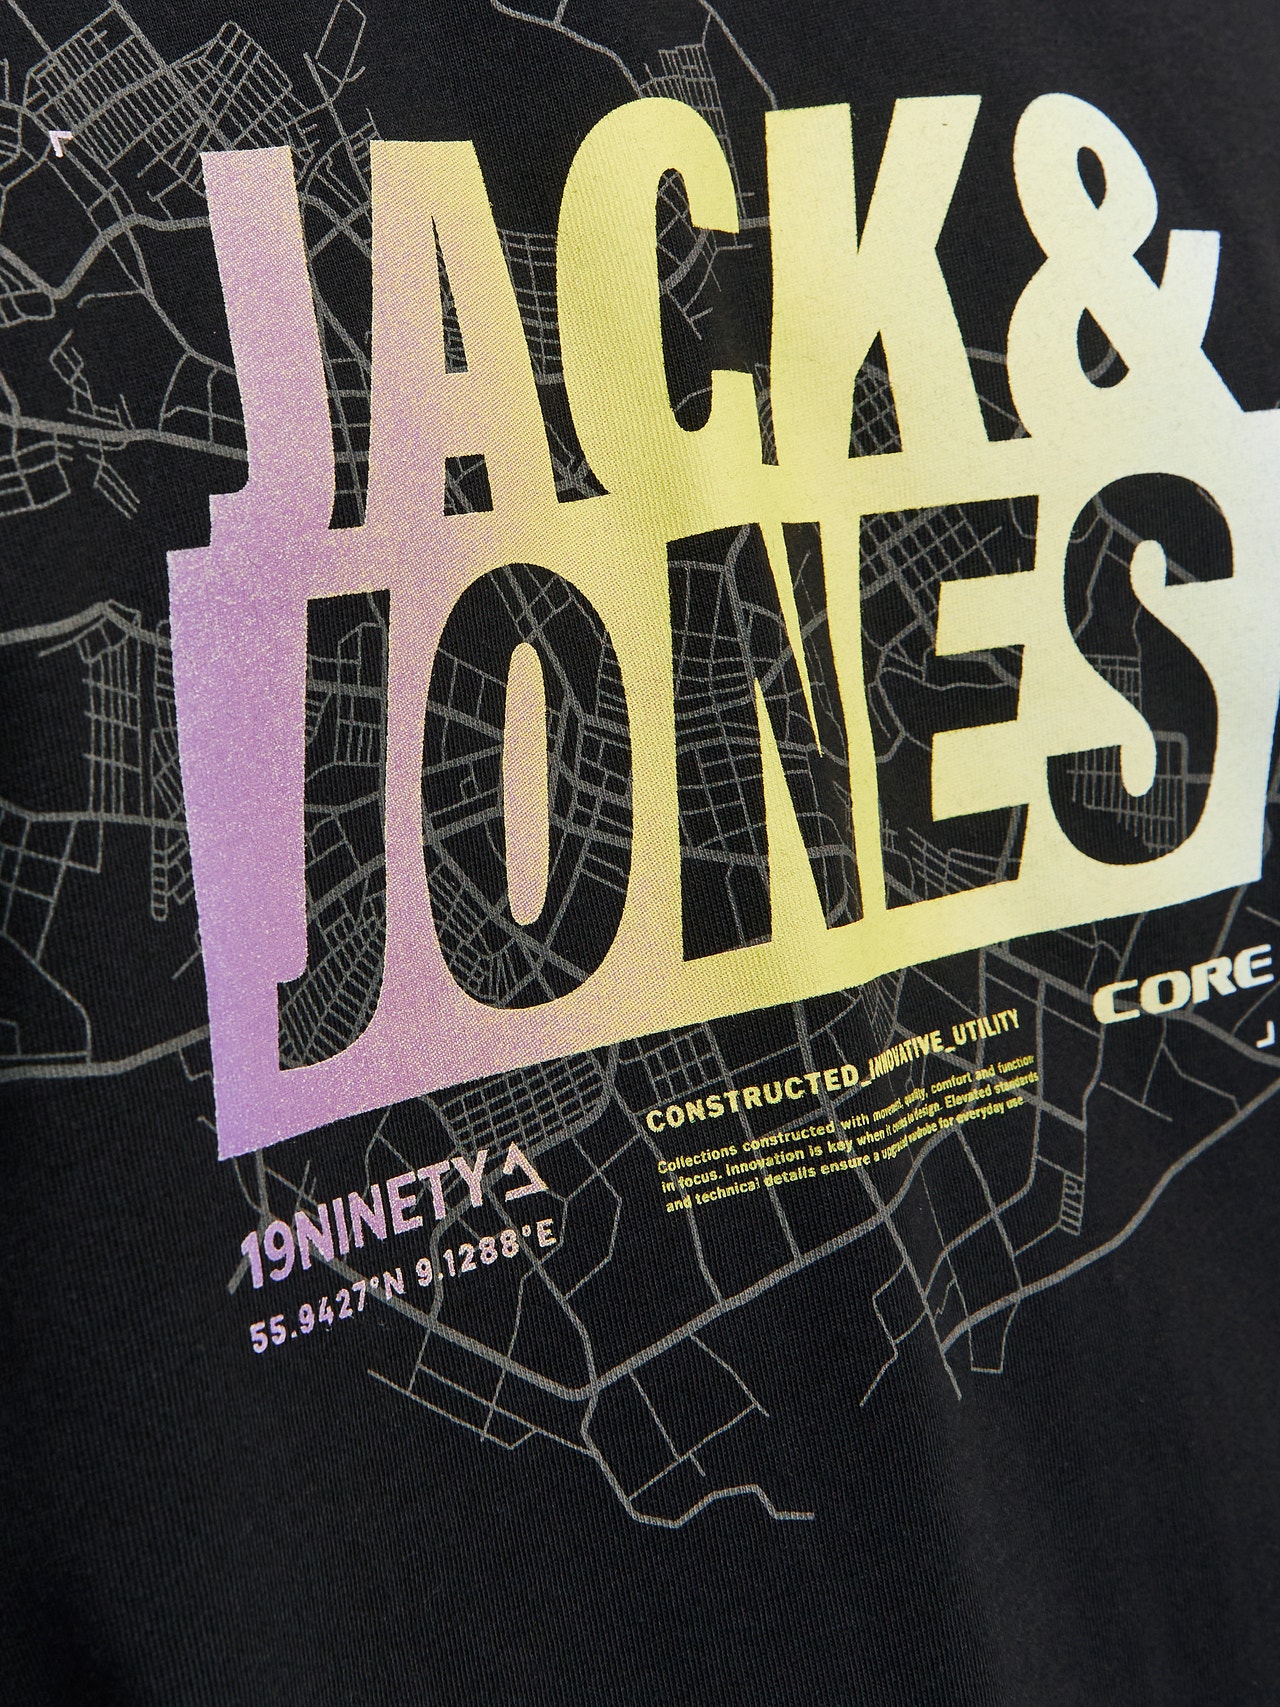 Jack & Jones T-shirt Imprimé Col rond -Black - 12257908